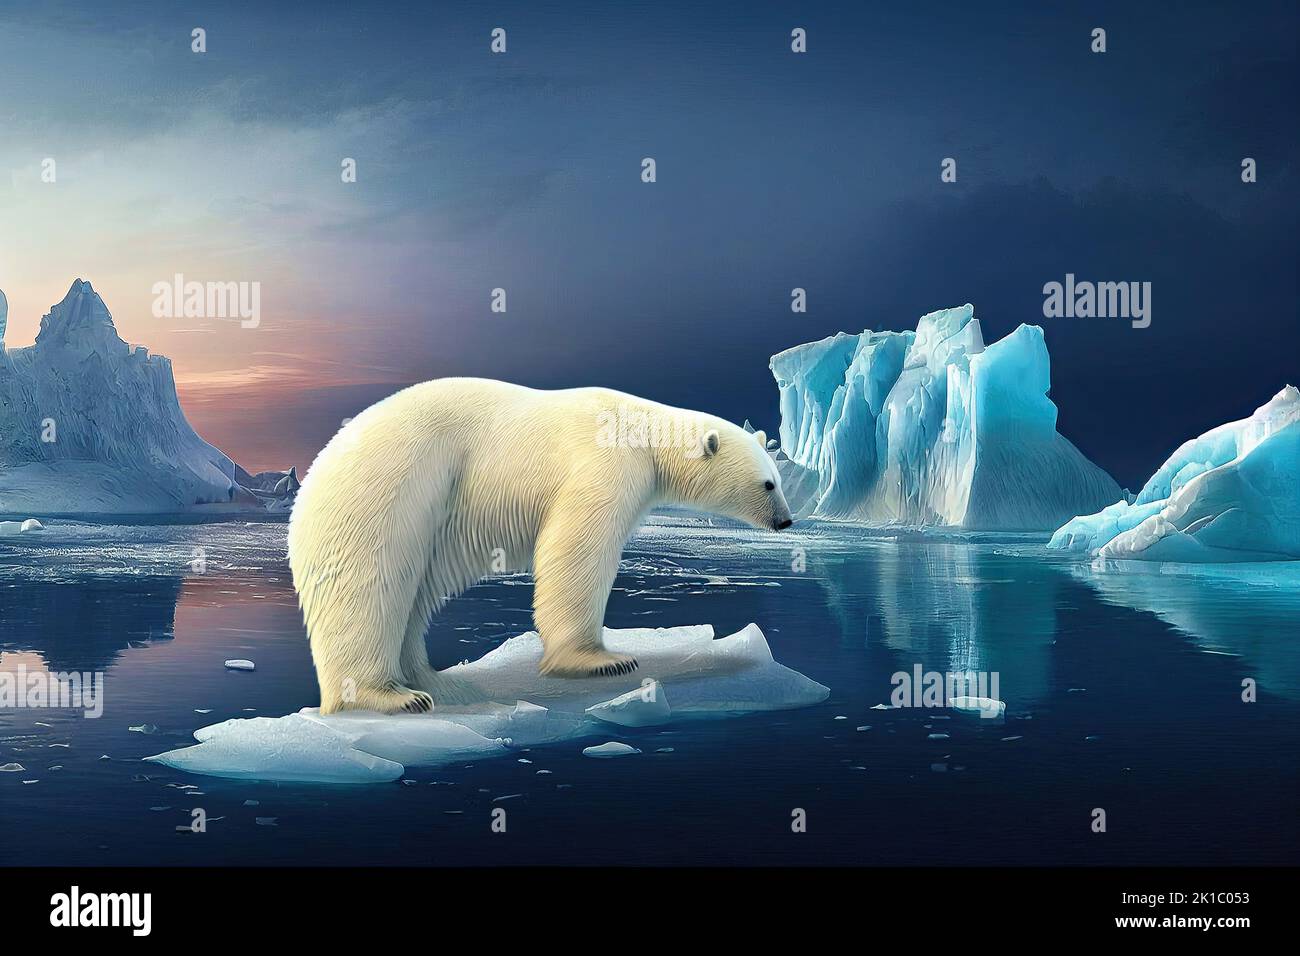 Oso polar sobre un iceberg en el océano ártico. Icebergs flotantes debido al cambio climático y al derretimiento de los glaciares. 3D ilustración y pintura digital. Foto de stock